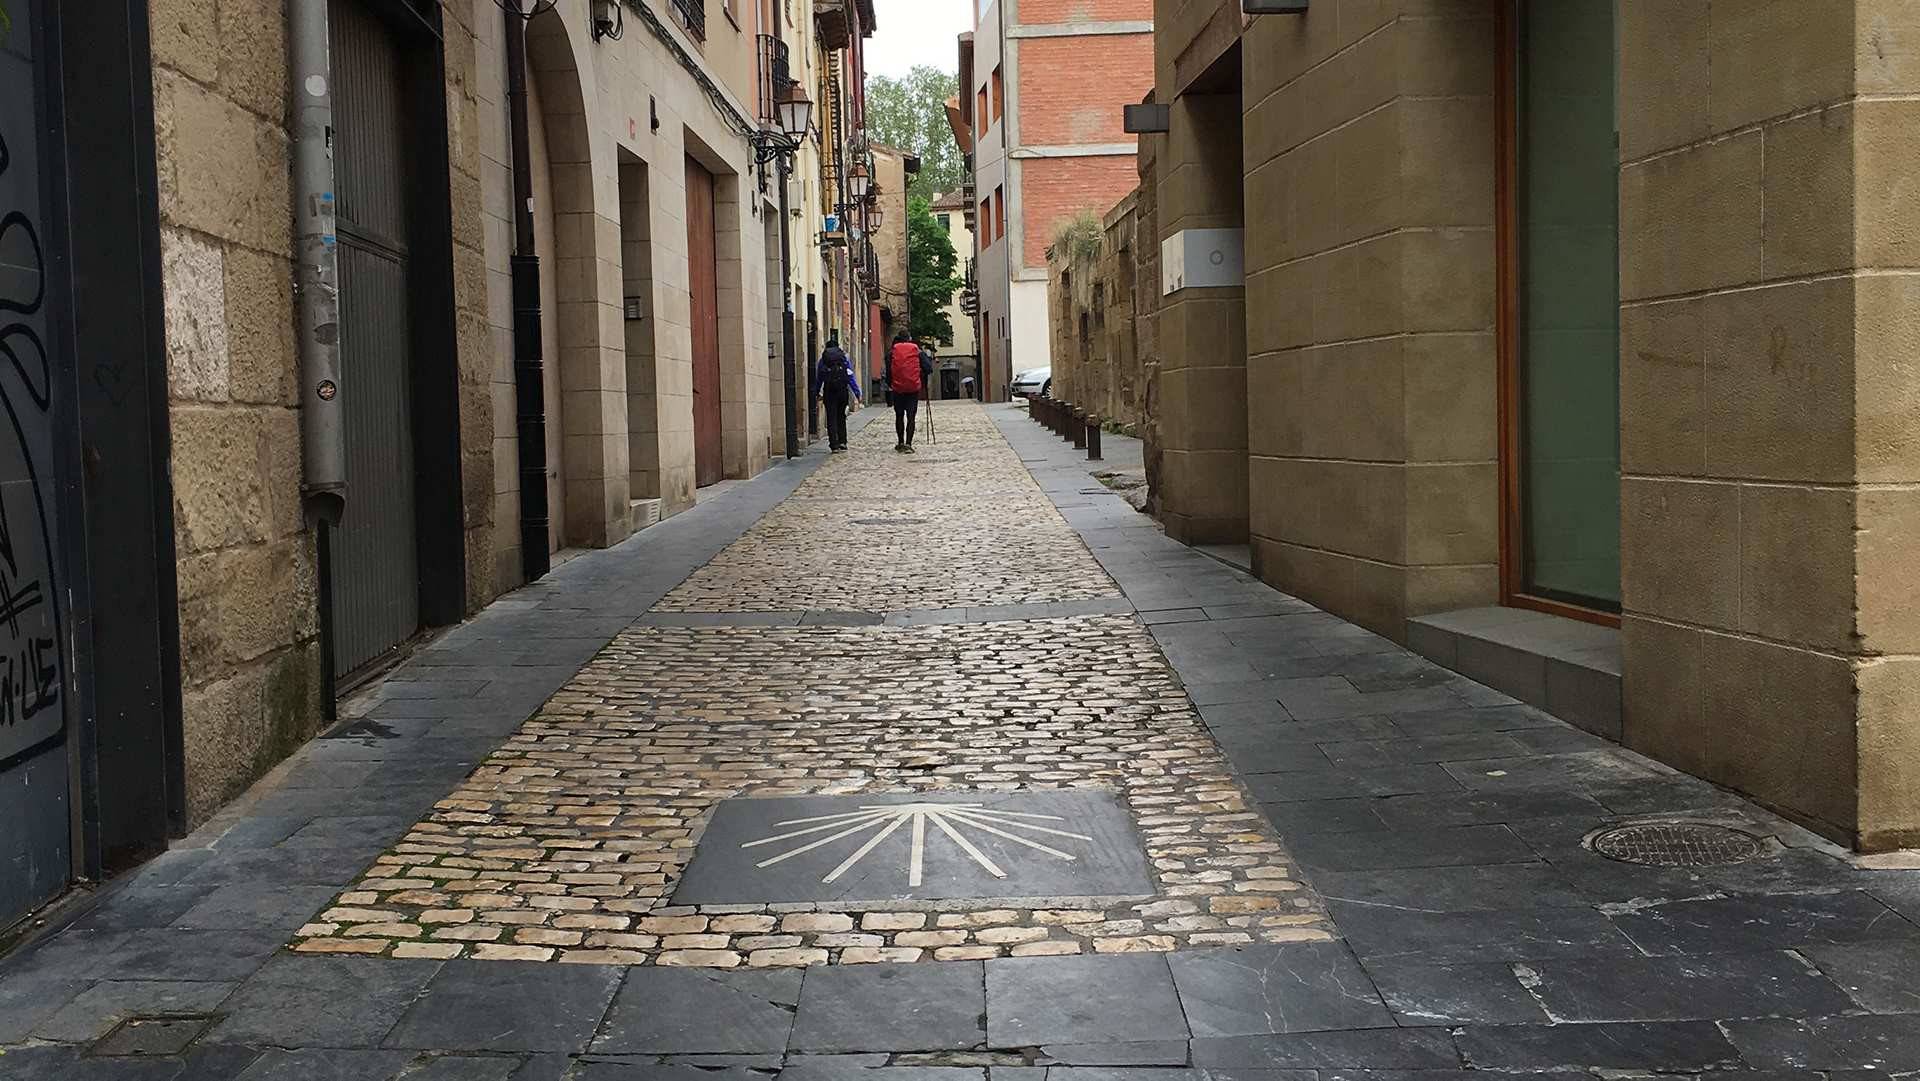 Ruavieja y Barriocepo trazan el Camino de Santiago en Logroño. Foto: ©ConMuchaGula